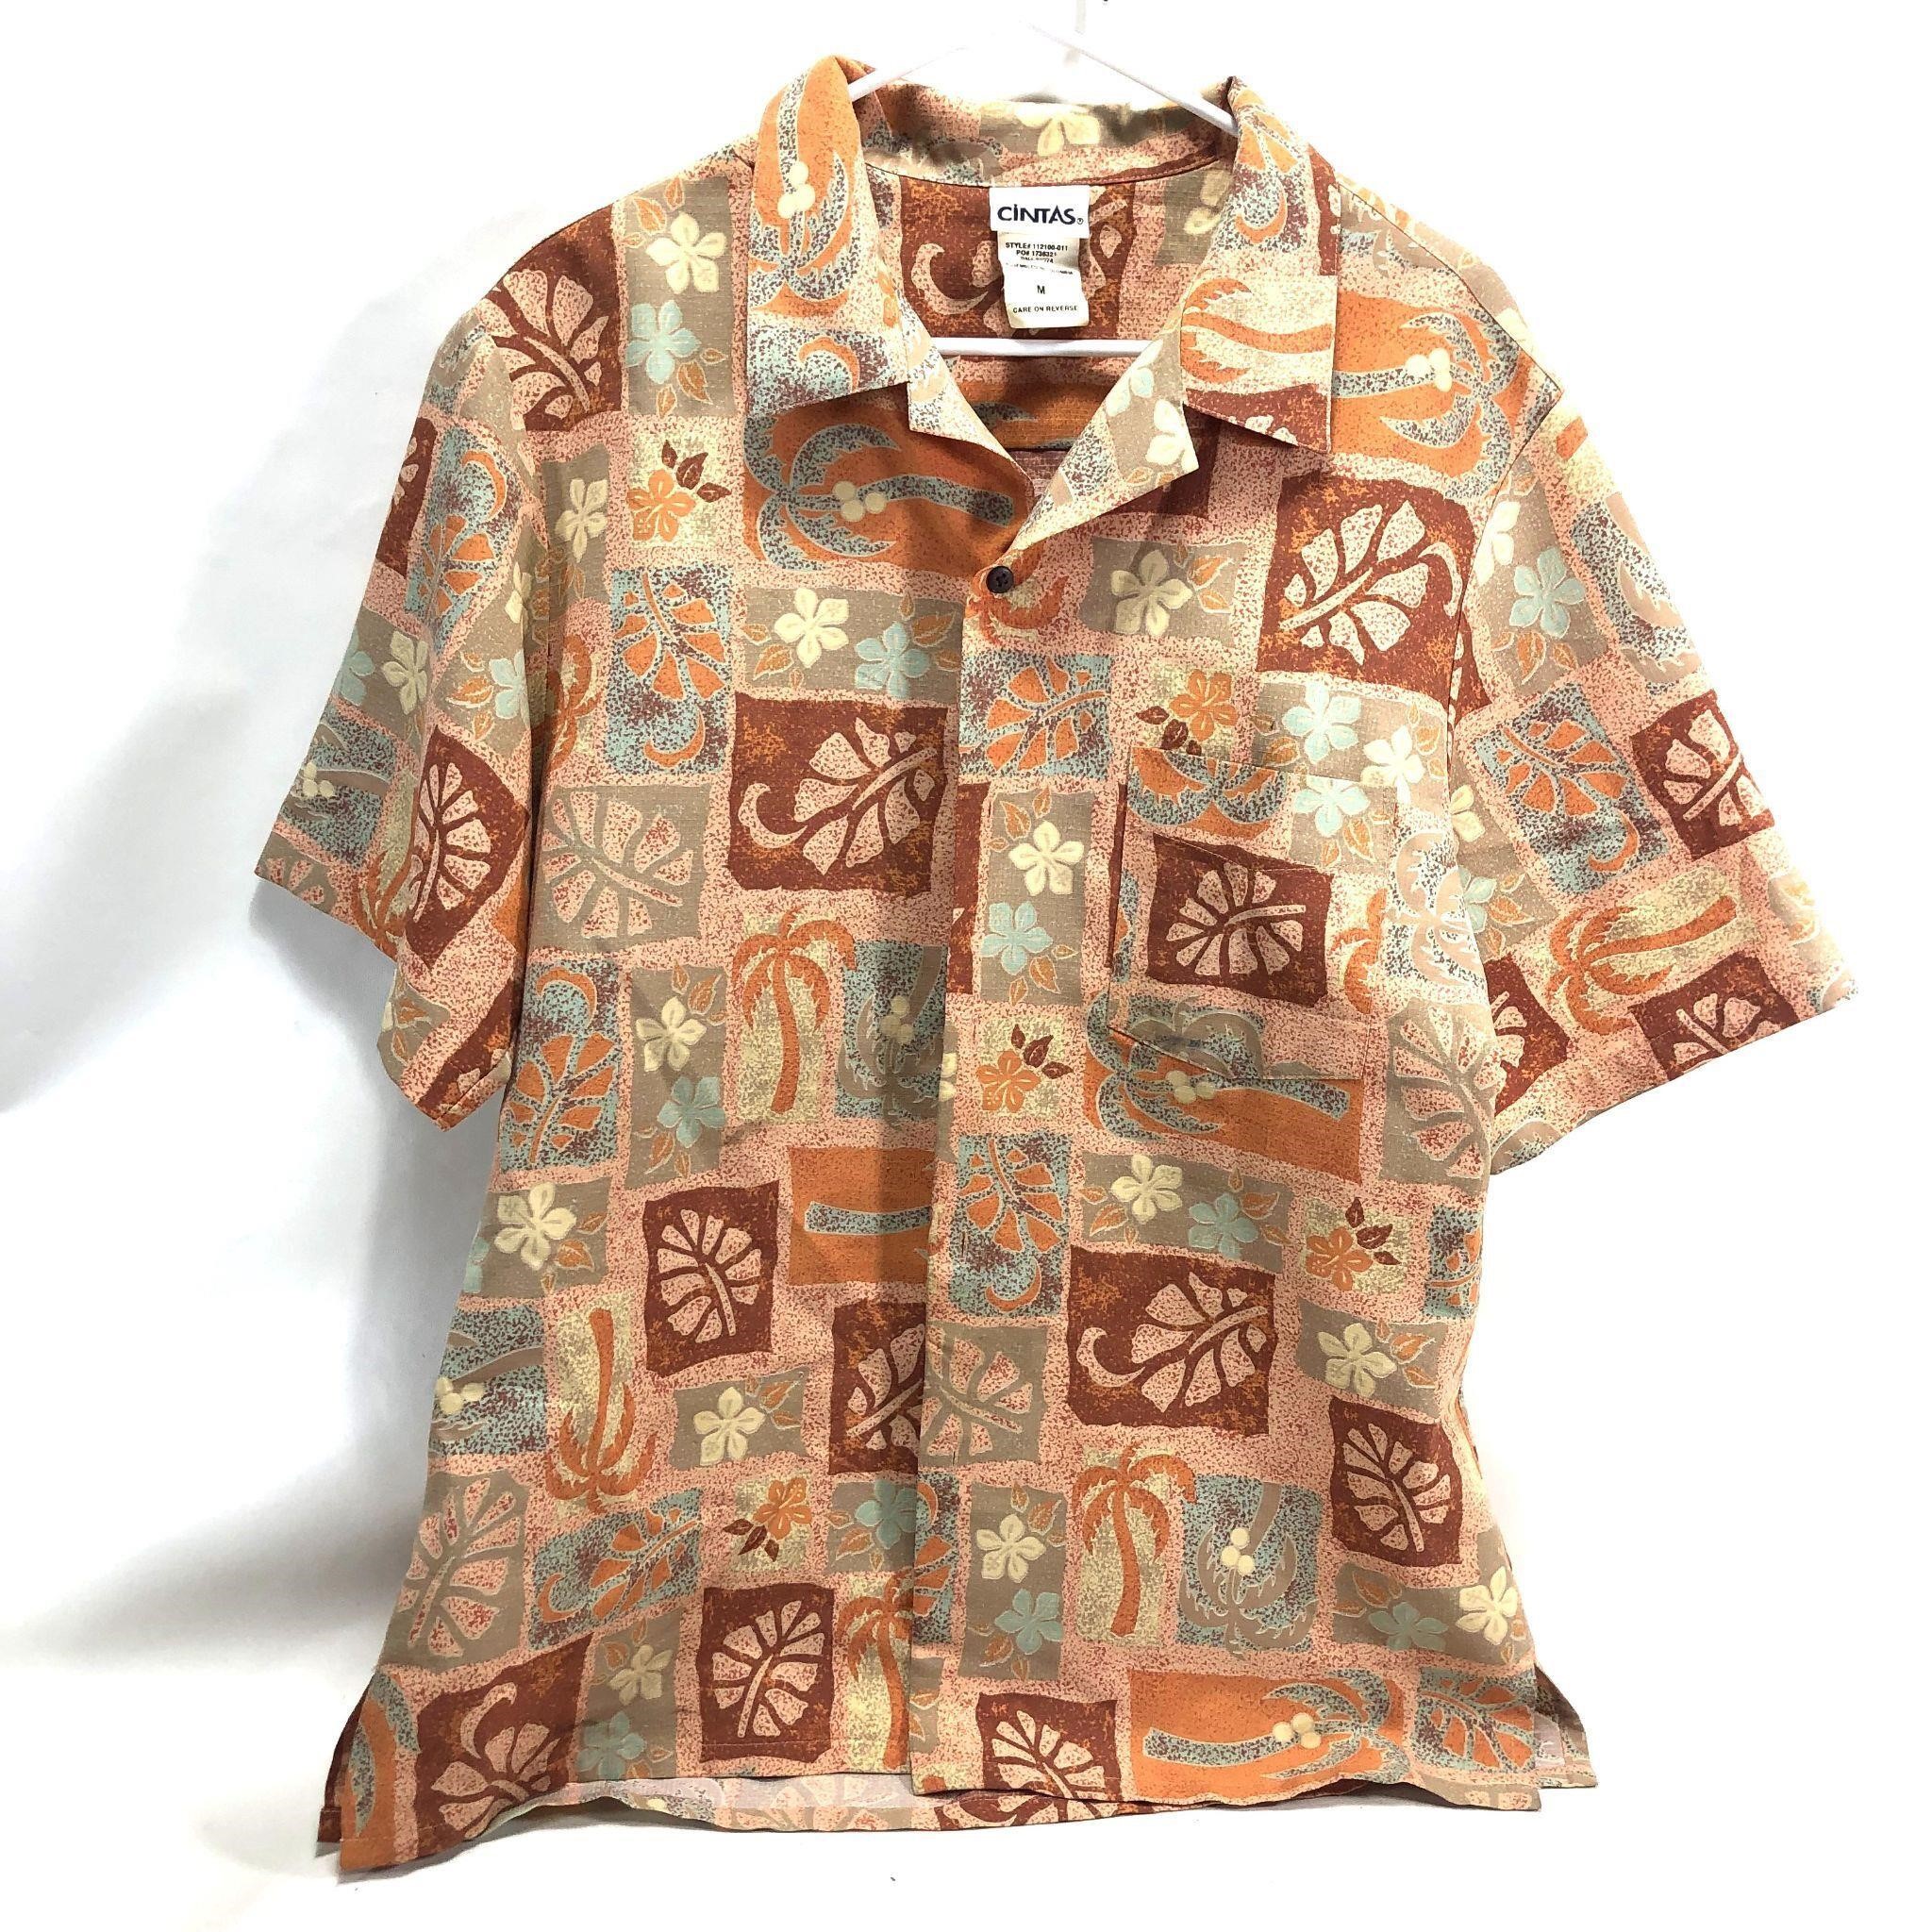 Vintage Hawaiian Themed Wait Staff Shirt